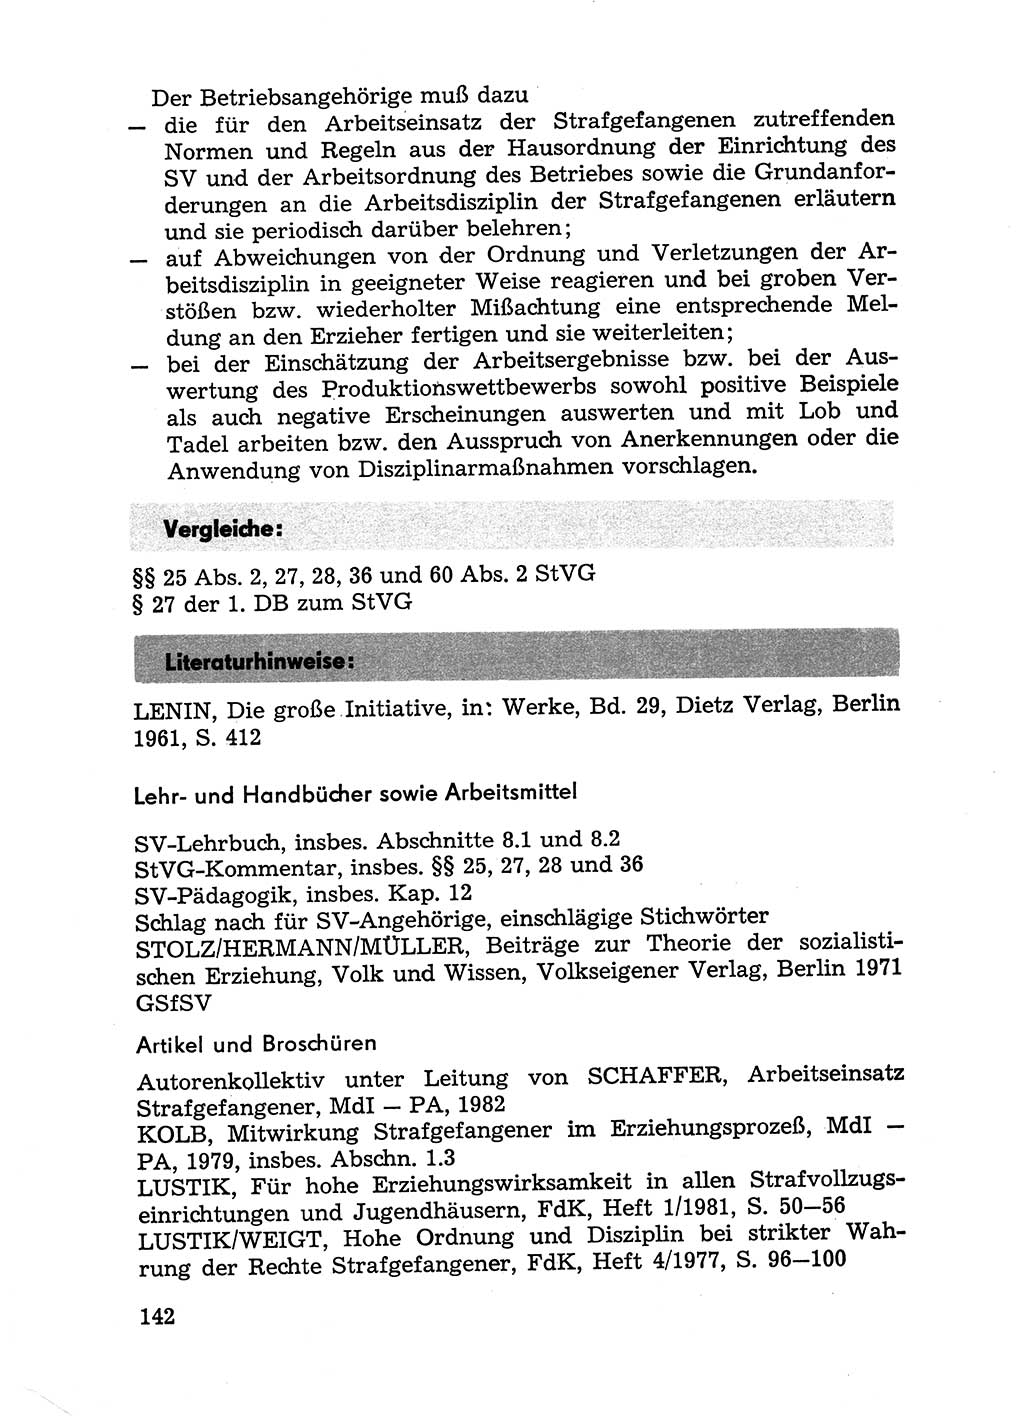 Handbuch für Betriebsangehörige, Abteilung Strafvollzug (SV) [Ministerium des Innern (MdI) Deutsche Demokratische Republik (DDR)] 1981, Seite 142 (Hb. BA Abt. SV MdI DDR 1981, S. 142)